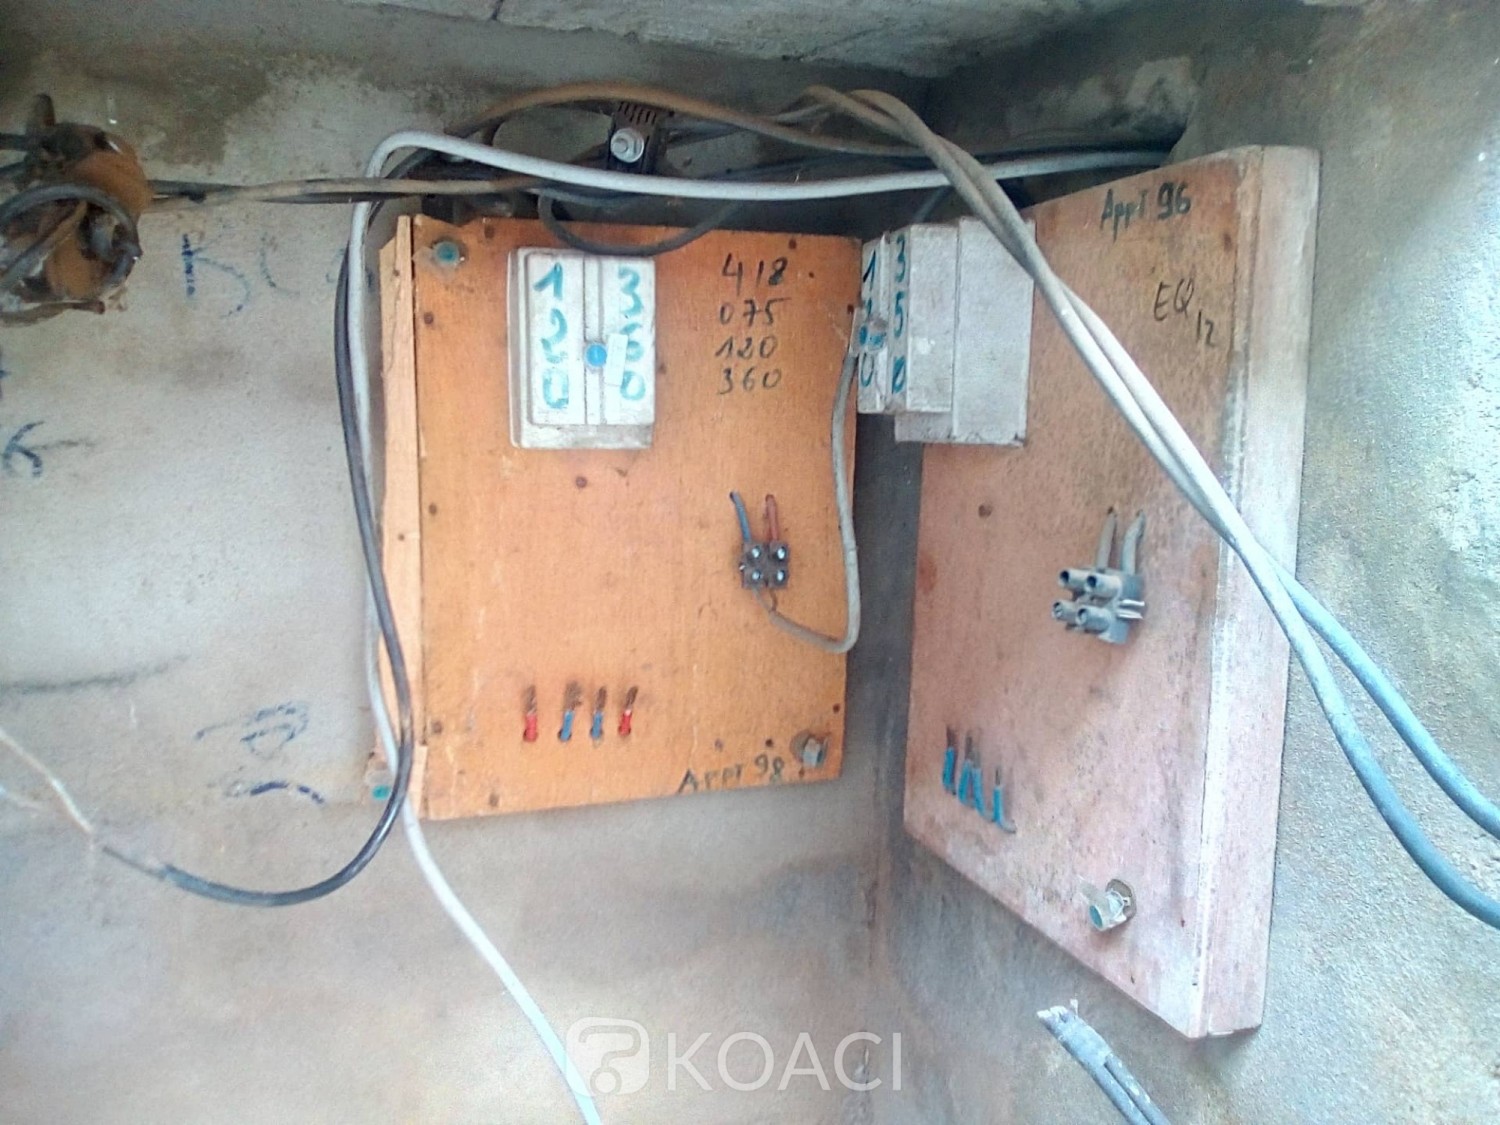 Côte d'Ivoire: Bouaké, des installations de la CIE prises pour cible,  des compteurs intelligents volés